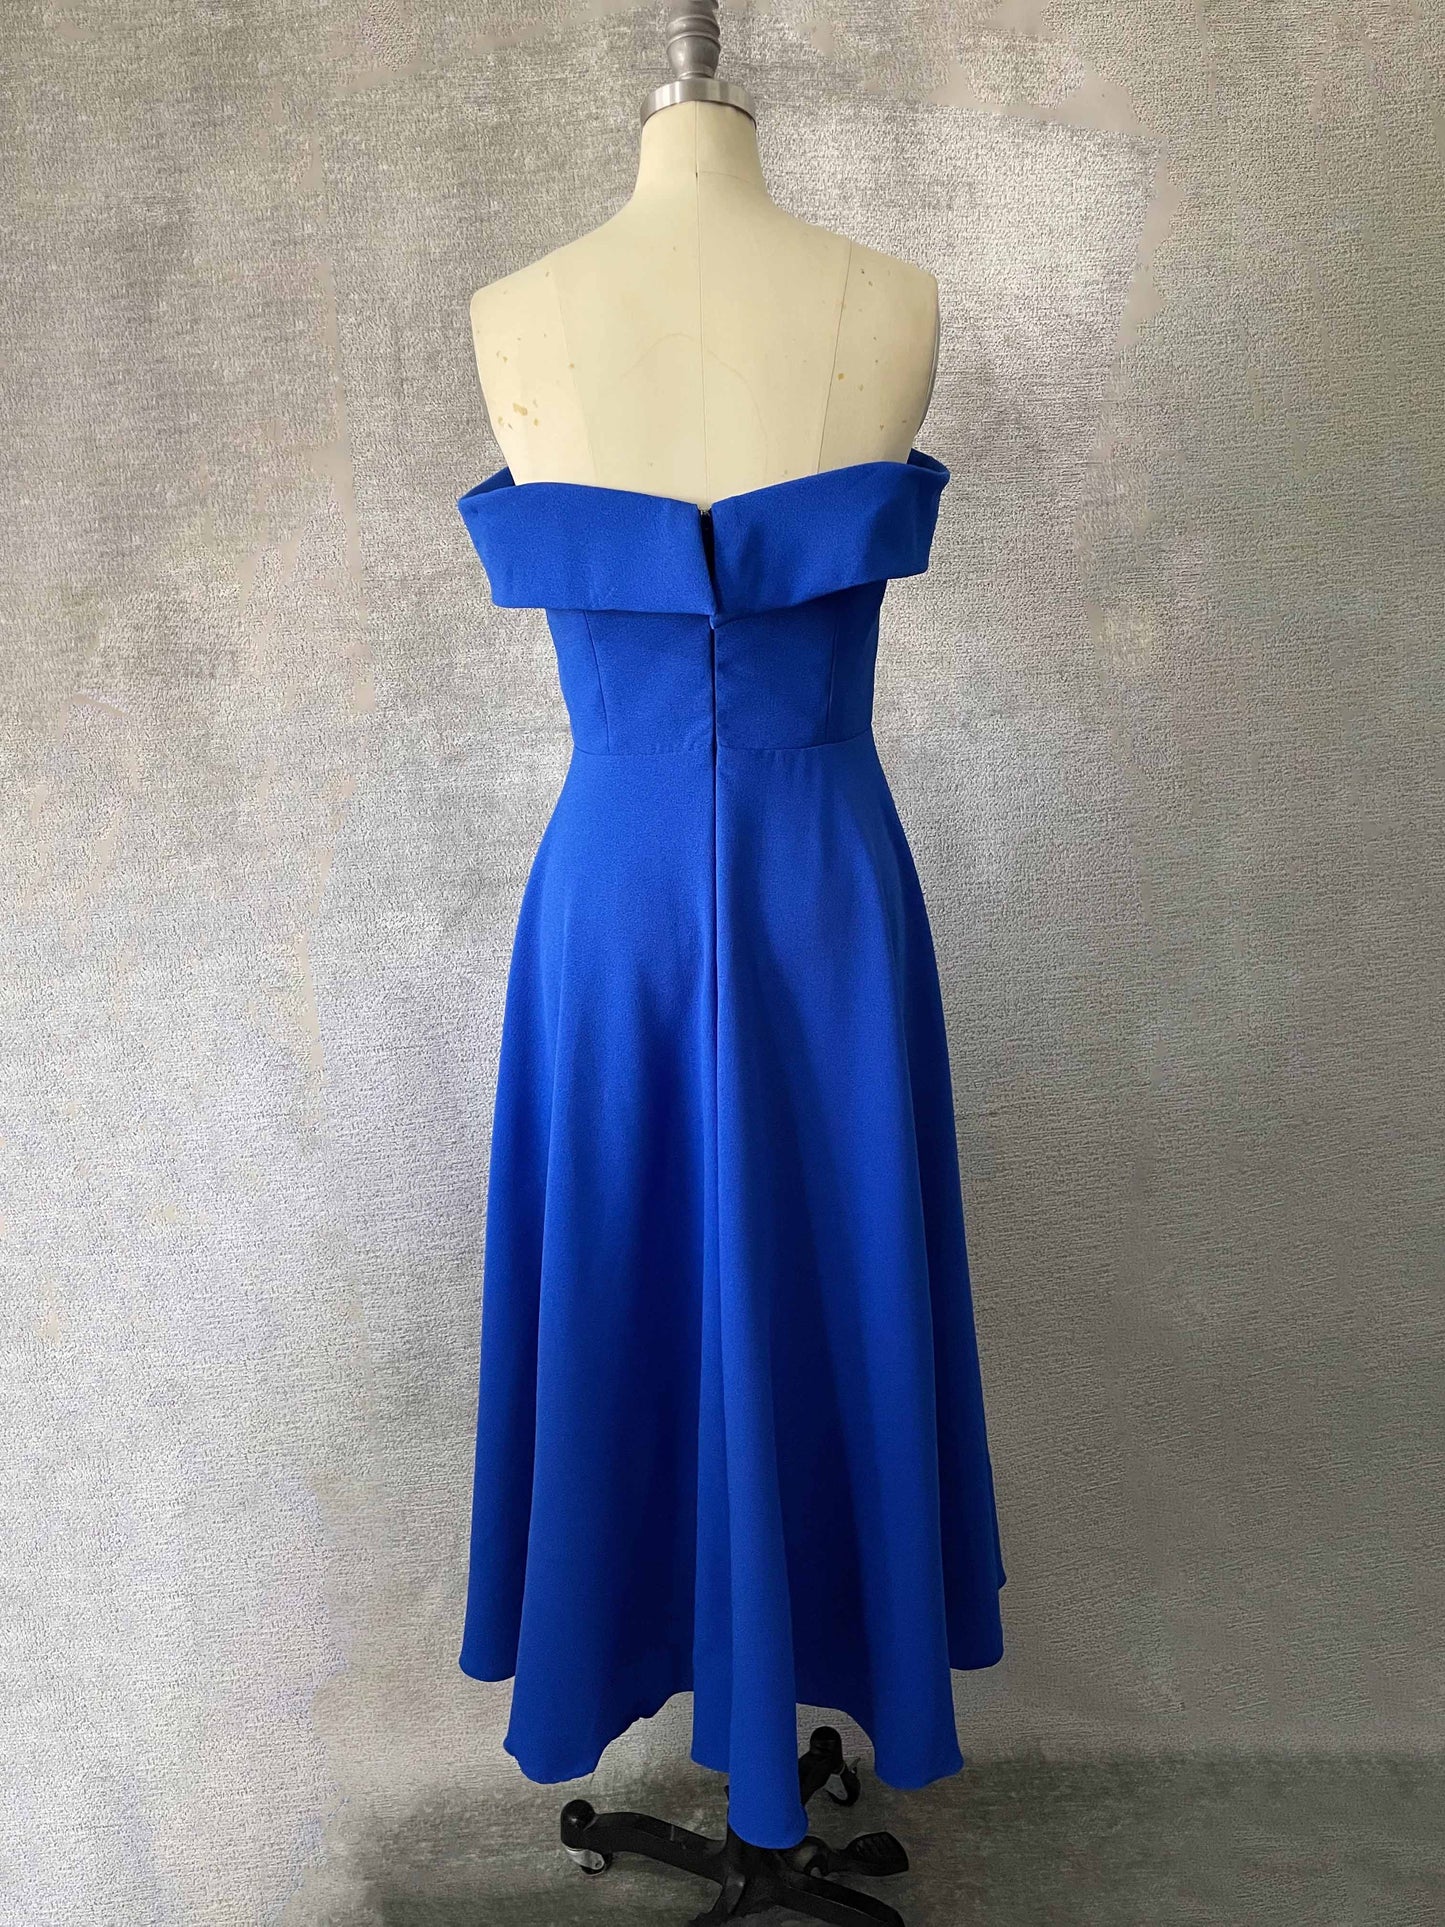 Blue Off-shoulder Cocktail Dress